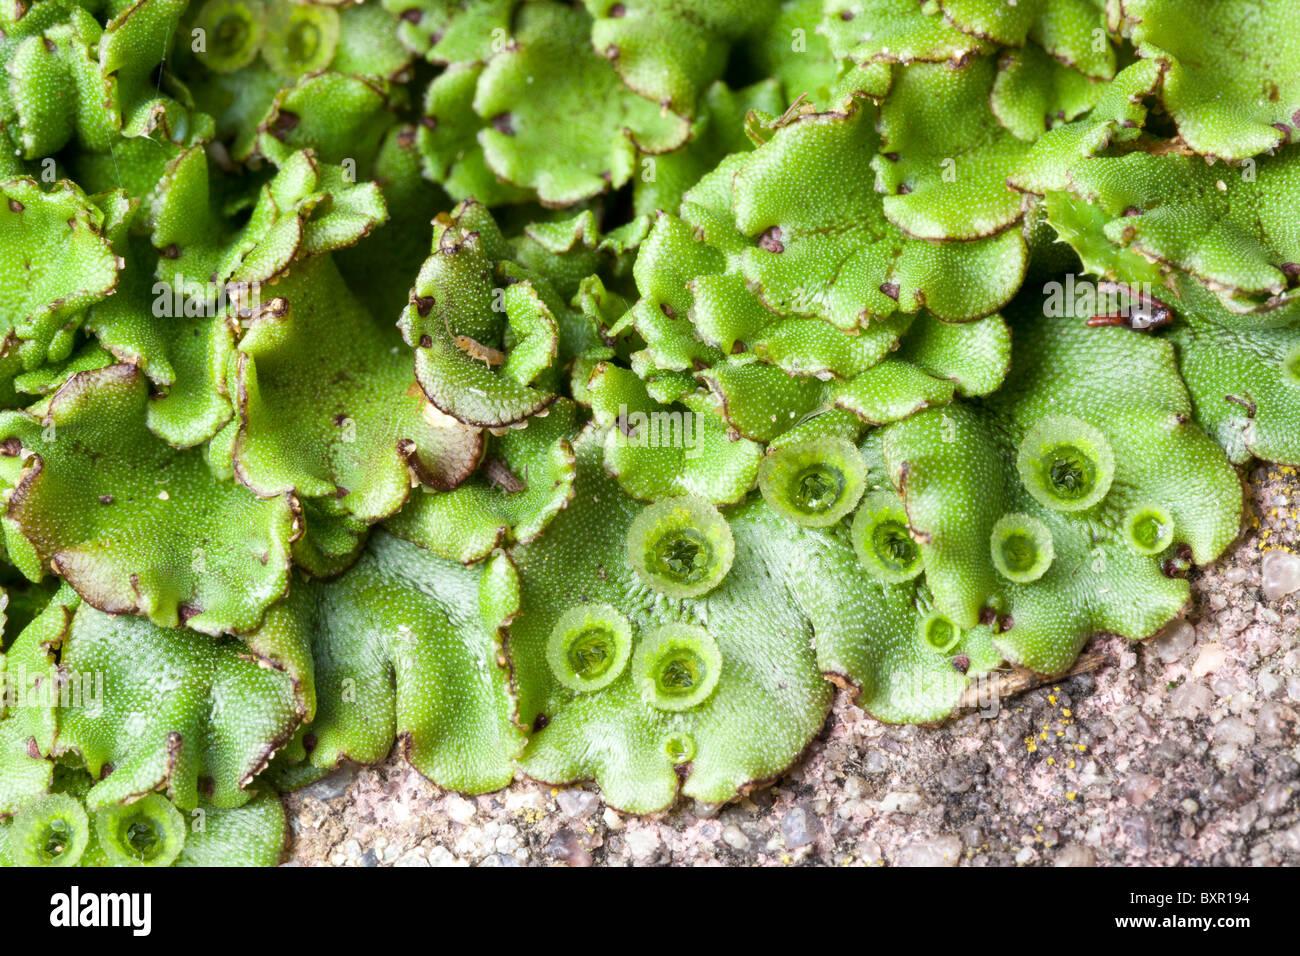 marchantiophyta-liverworts-hepatics-BXR194.jpg